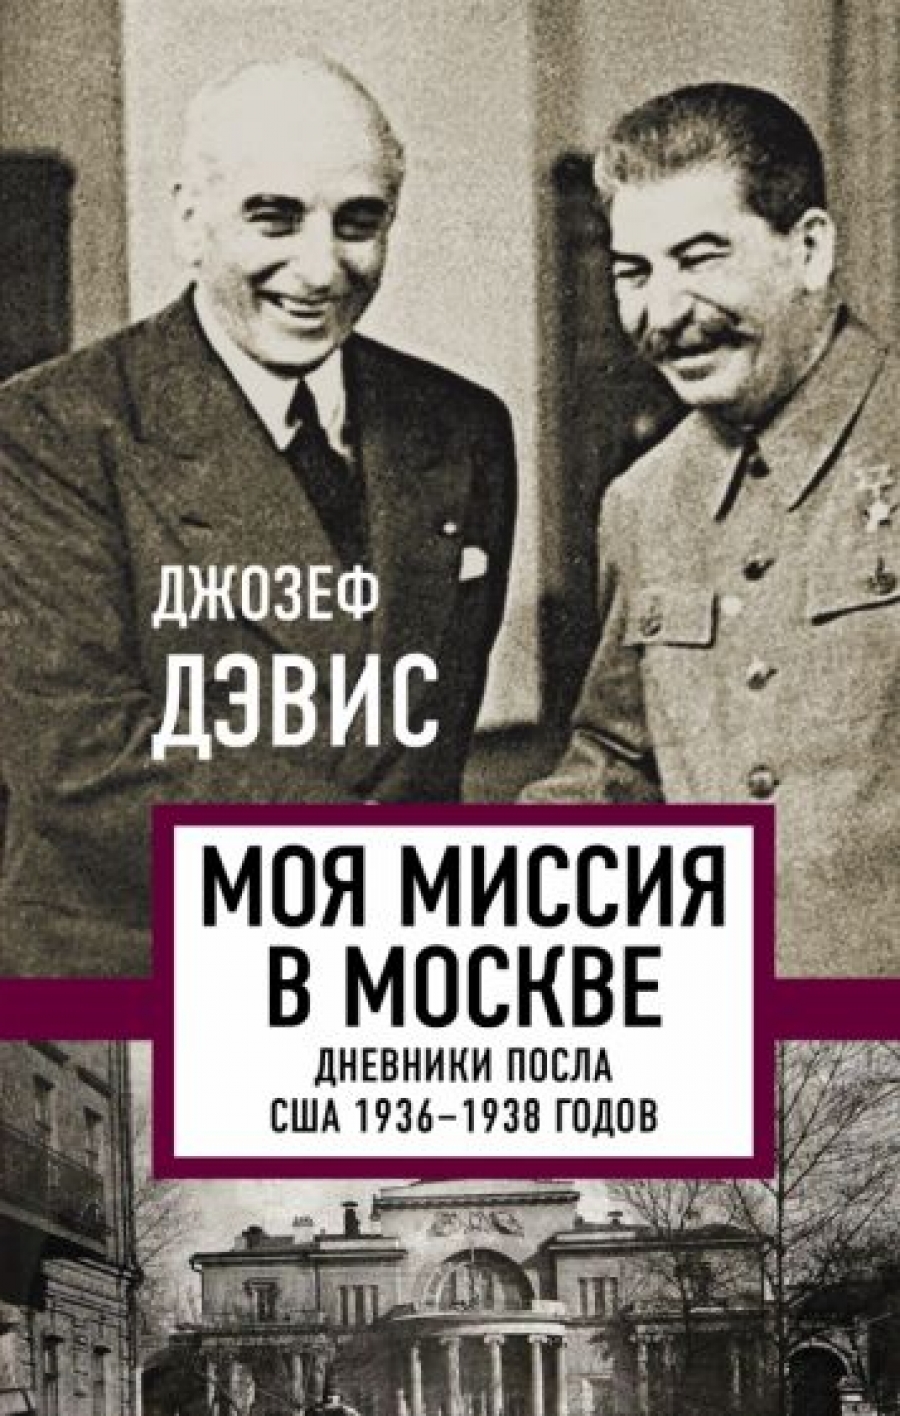      .    1936-1938  